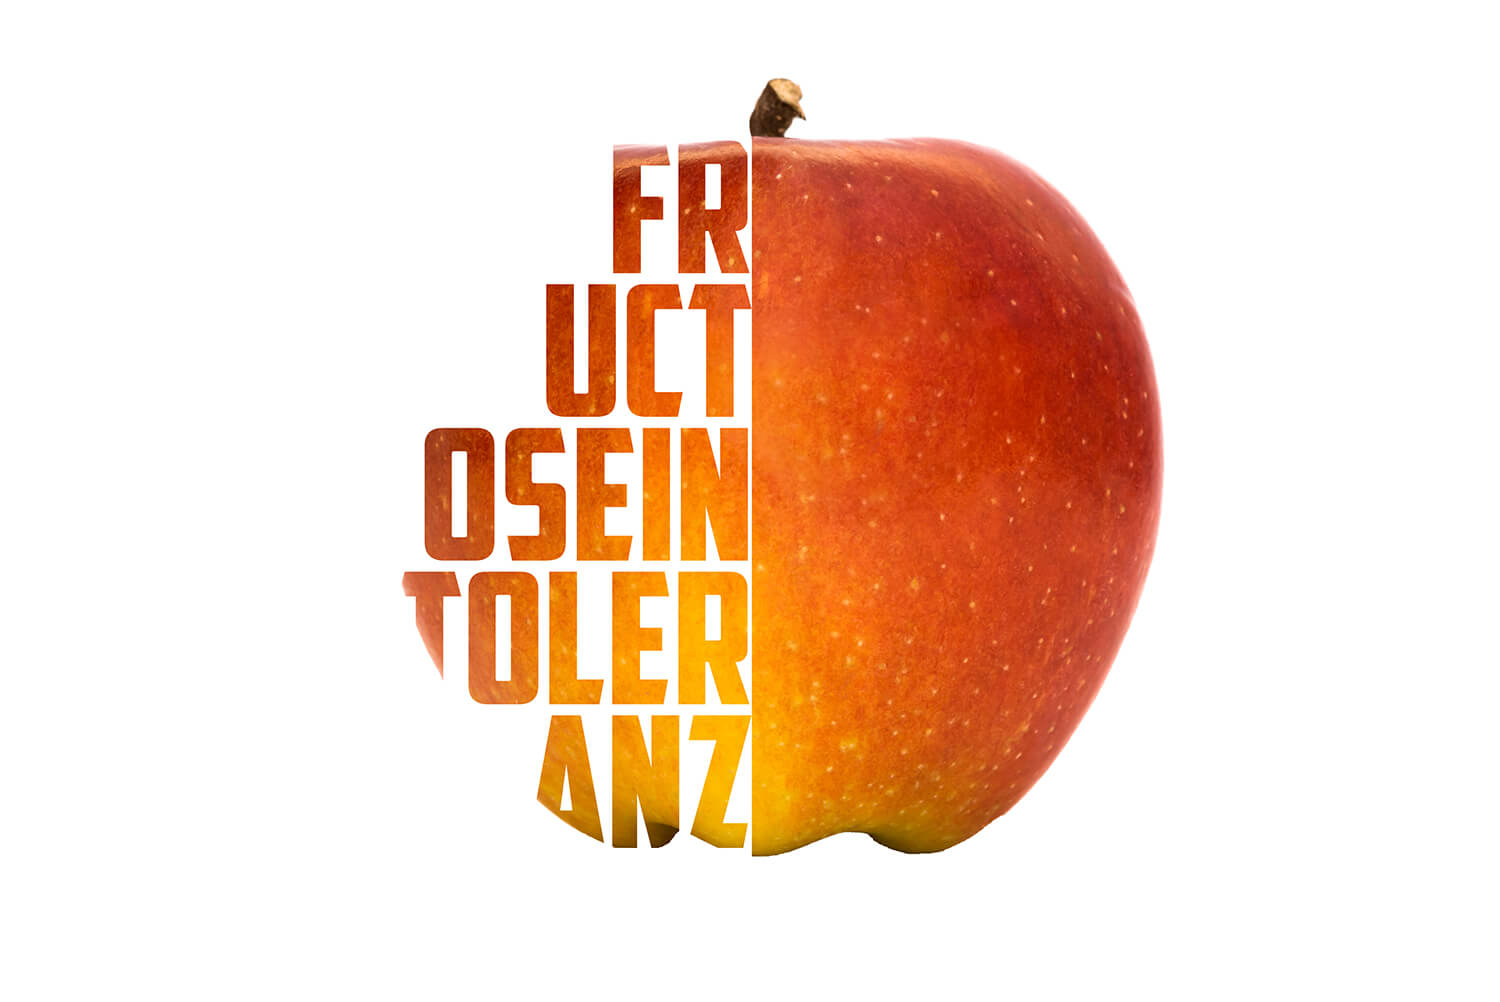 Halbierter Apfel mit Illustration "Fructoseintoleranz"